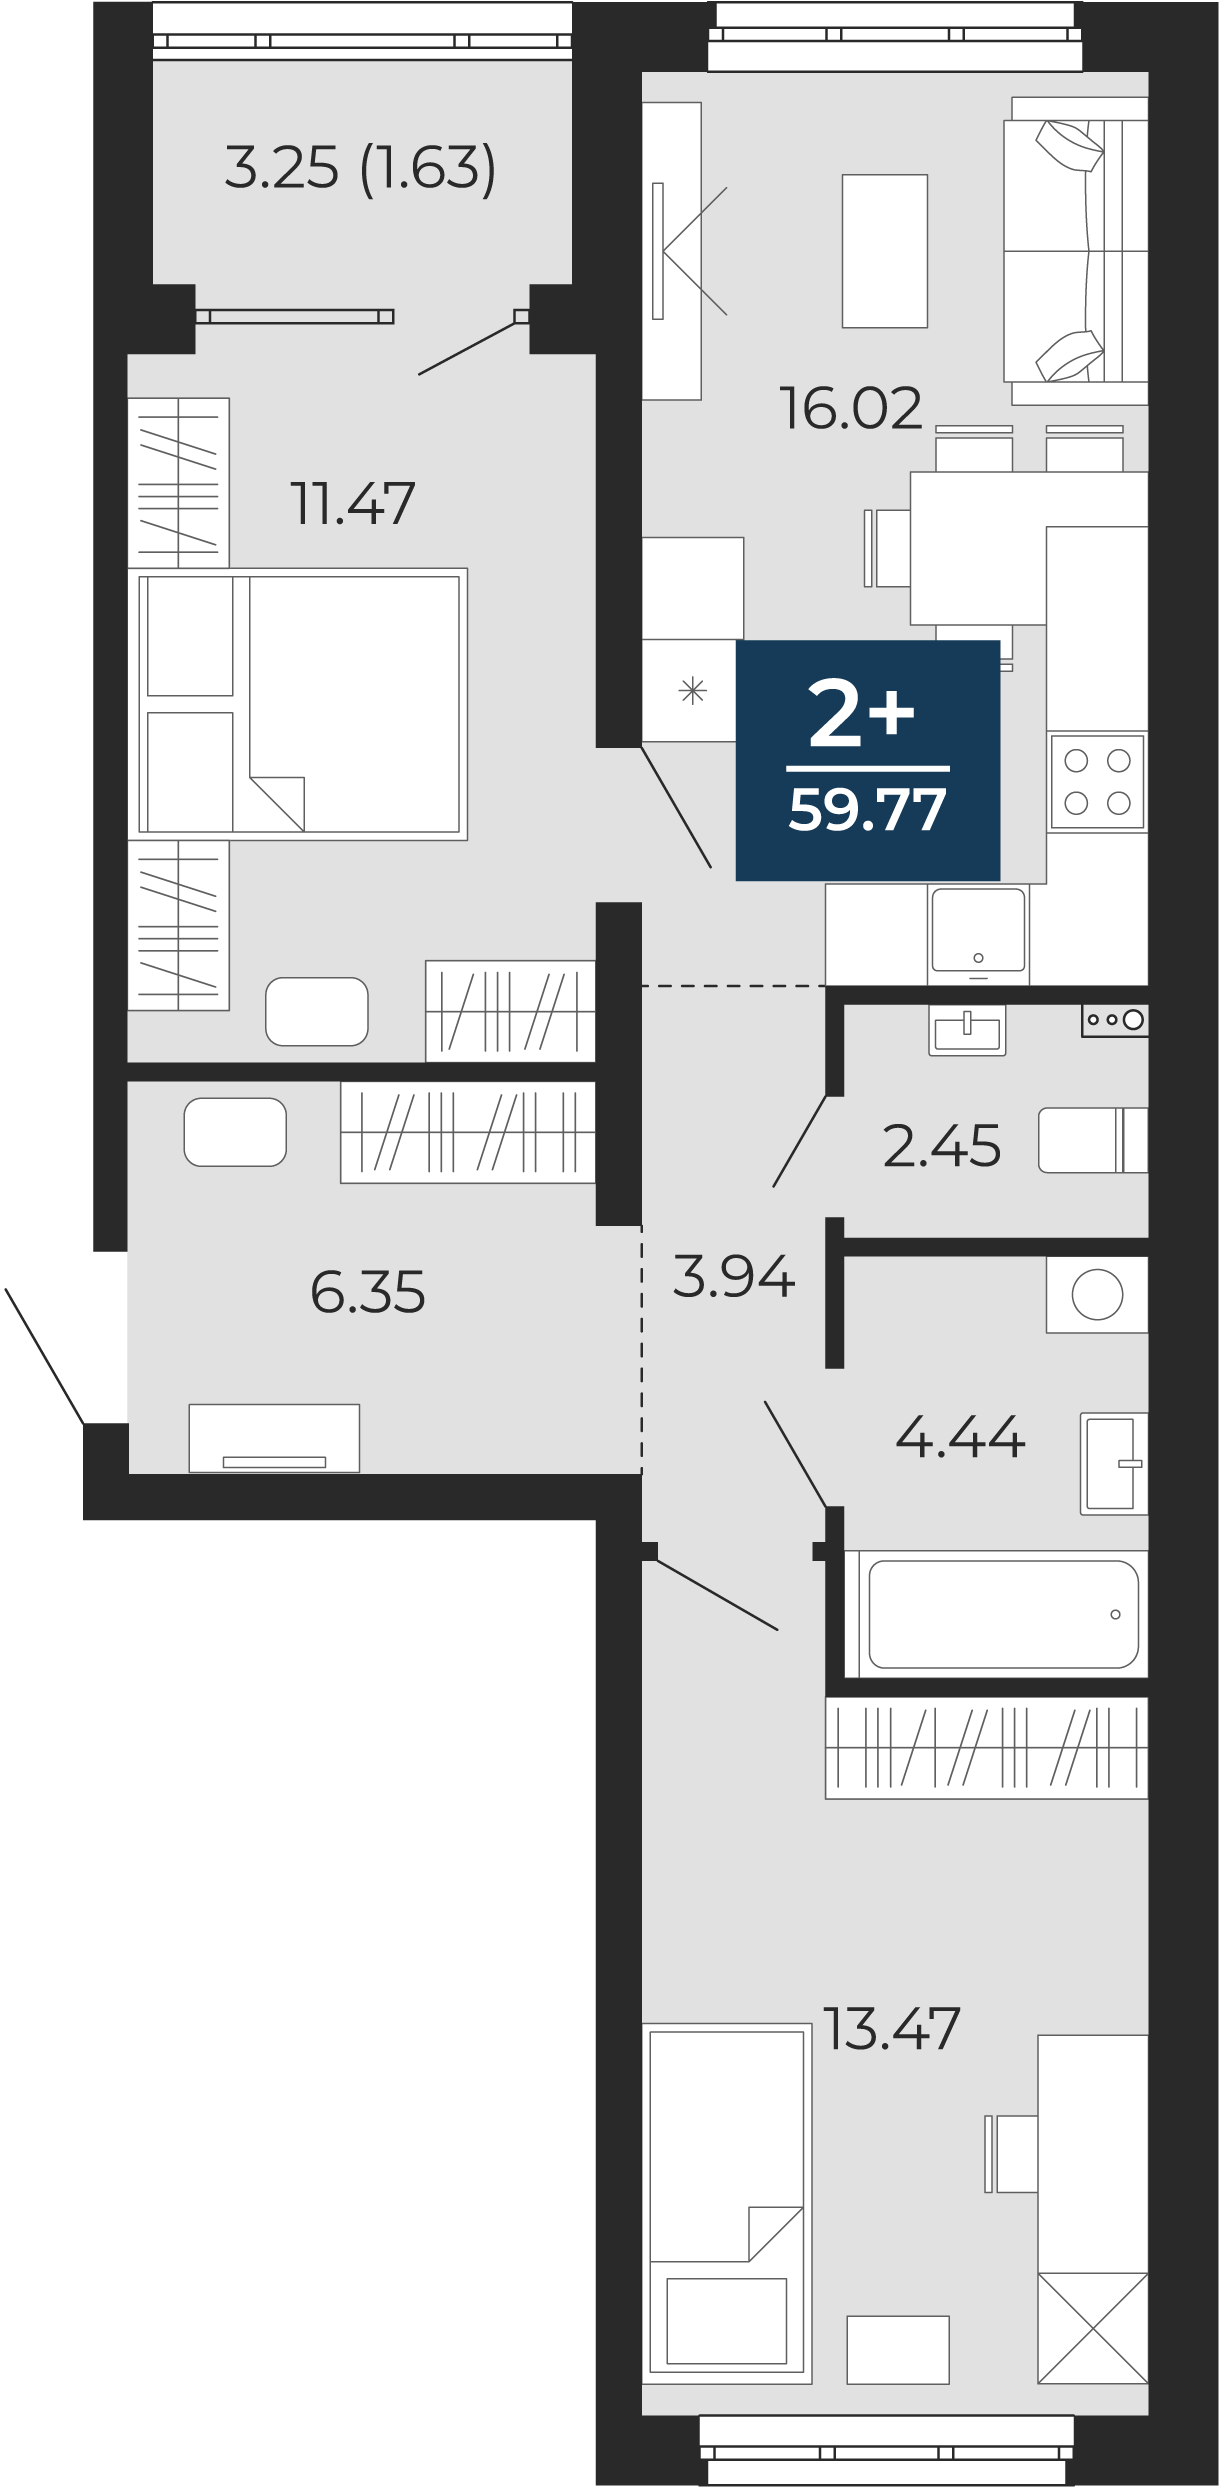 Квартира № 110, 2-комнатная, 59.77 кв. м, 2 этаж